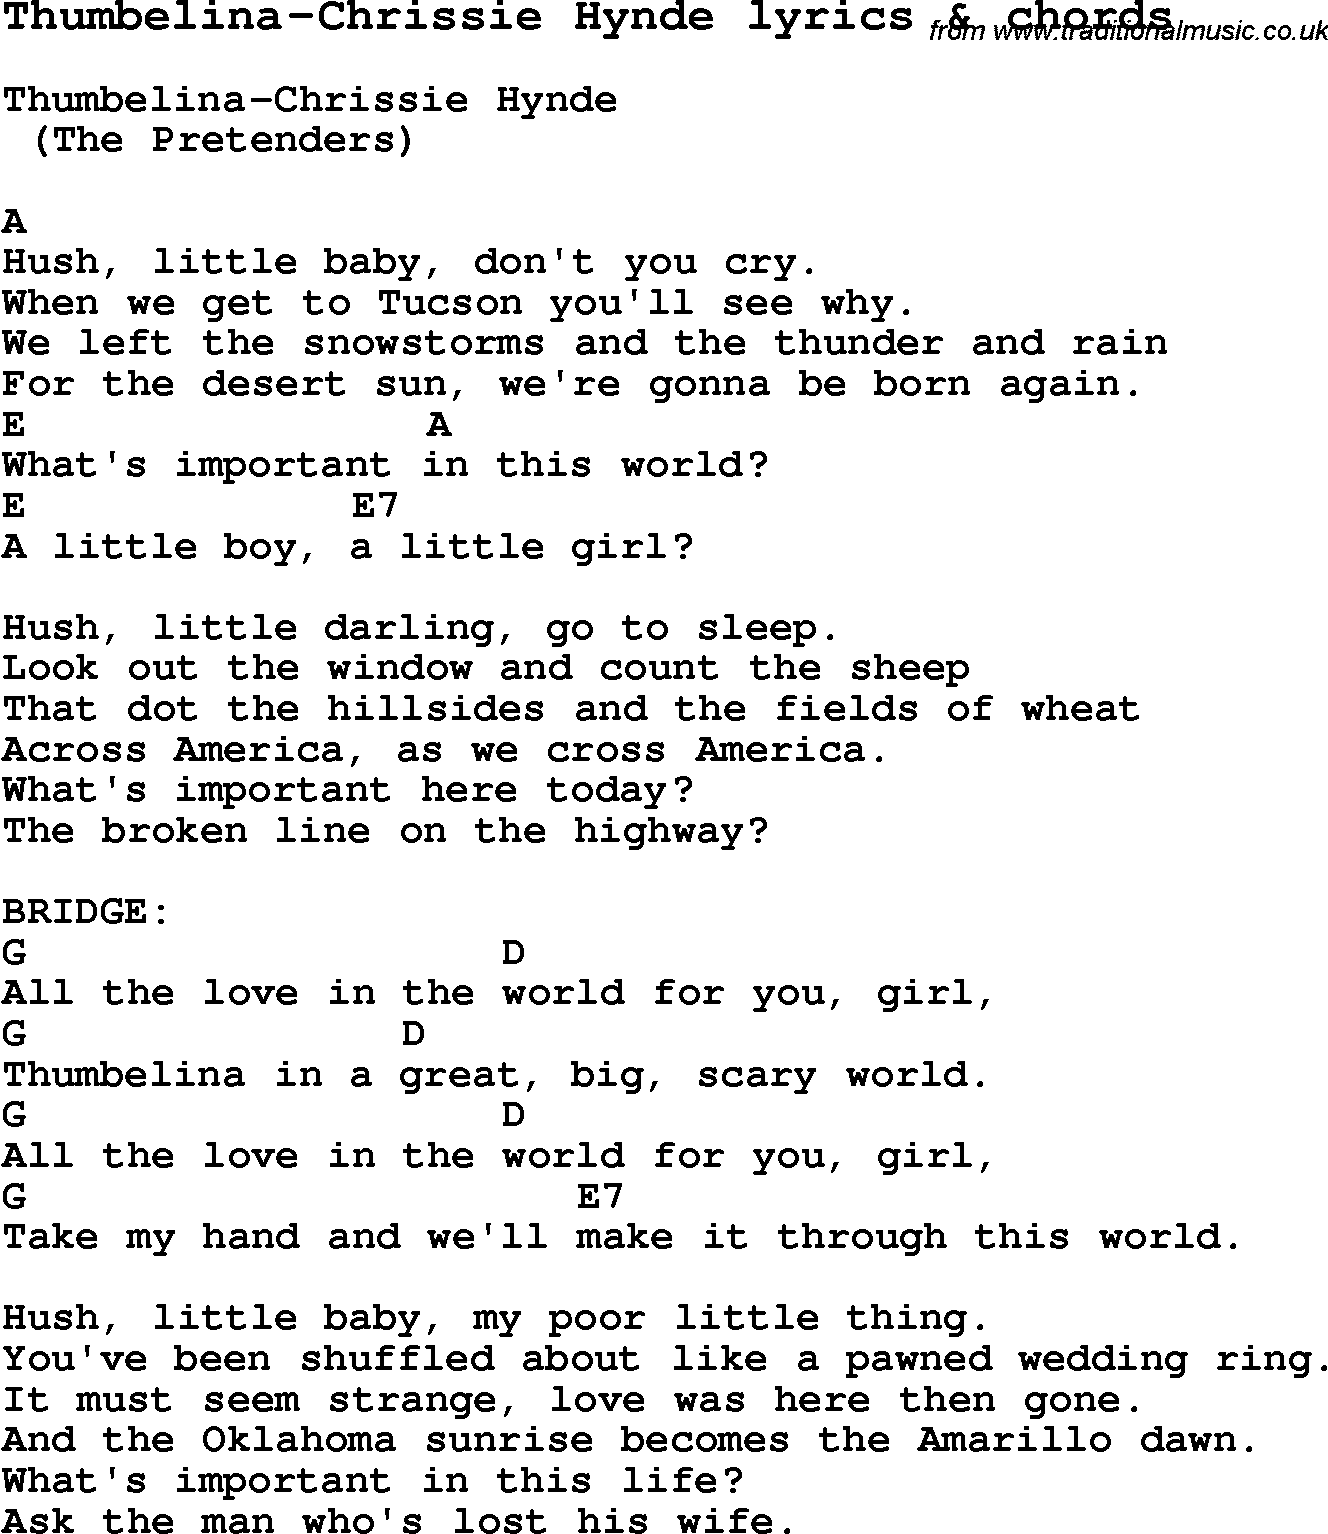 Love Song Lyrics for: Thumbelina-Chrissie Hynde with chords for Ukulele, Guitar Banjo etc.